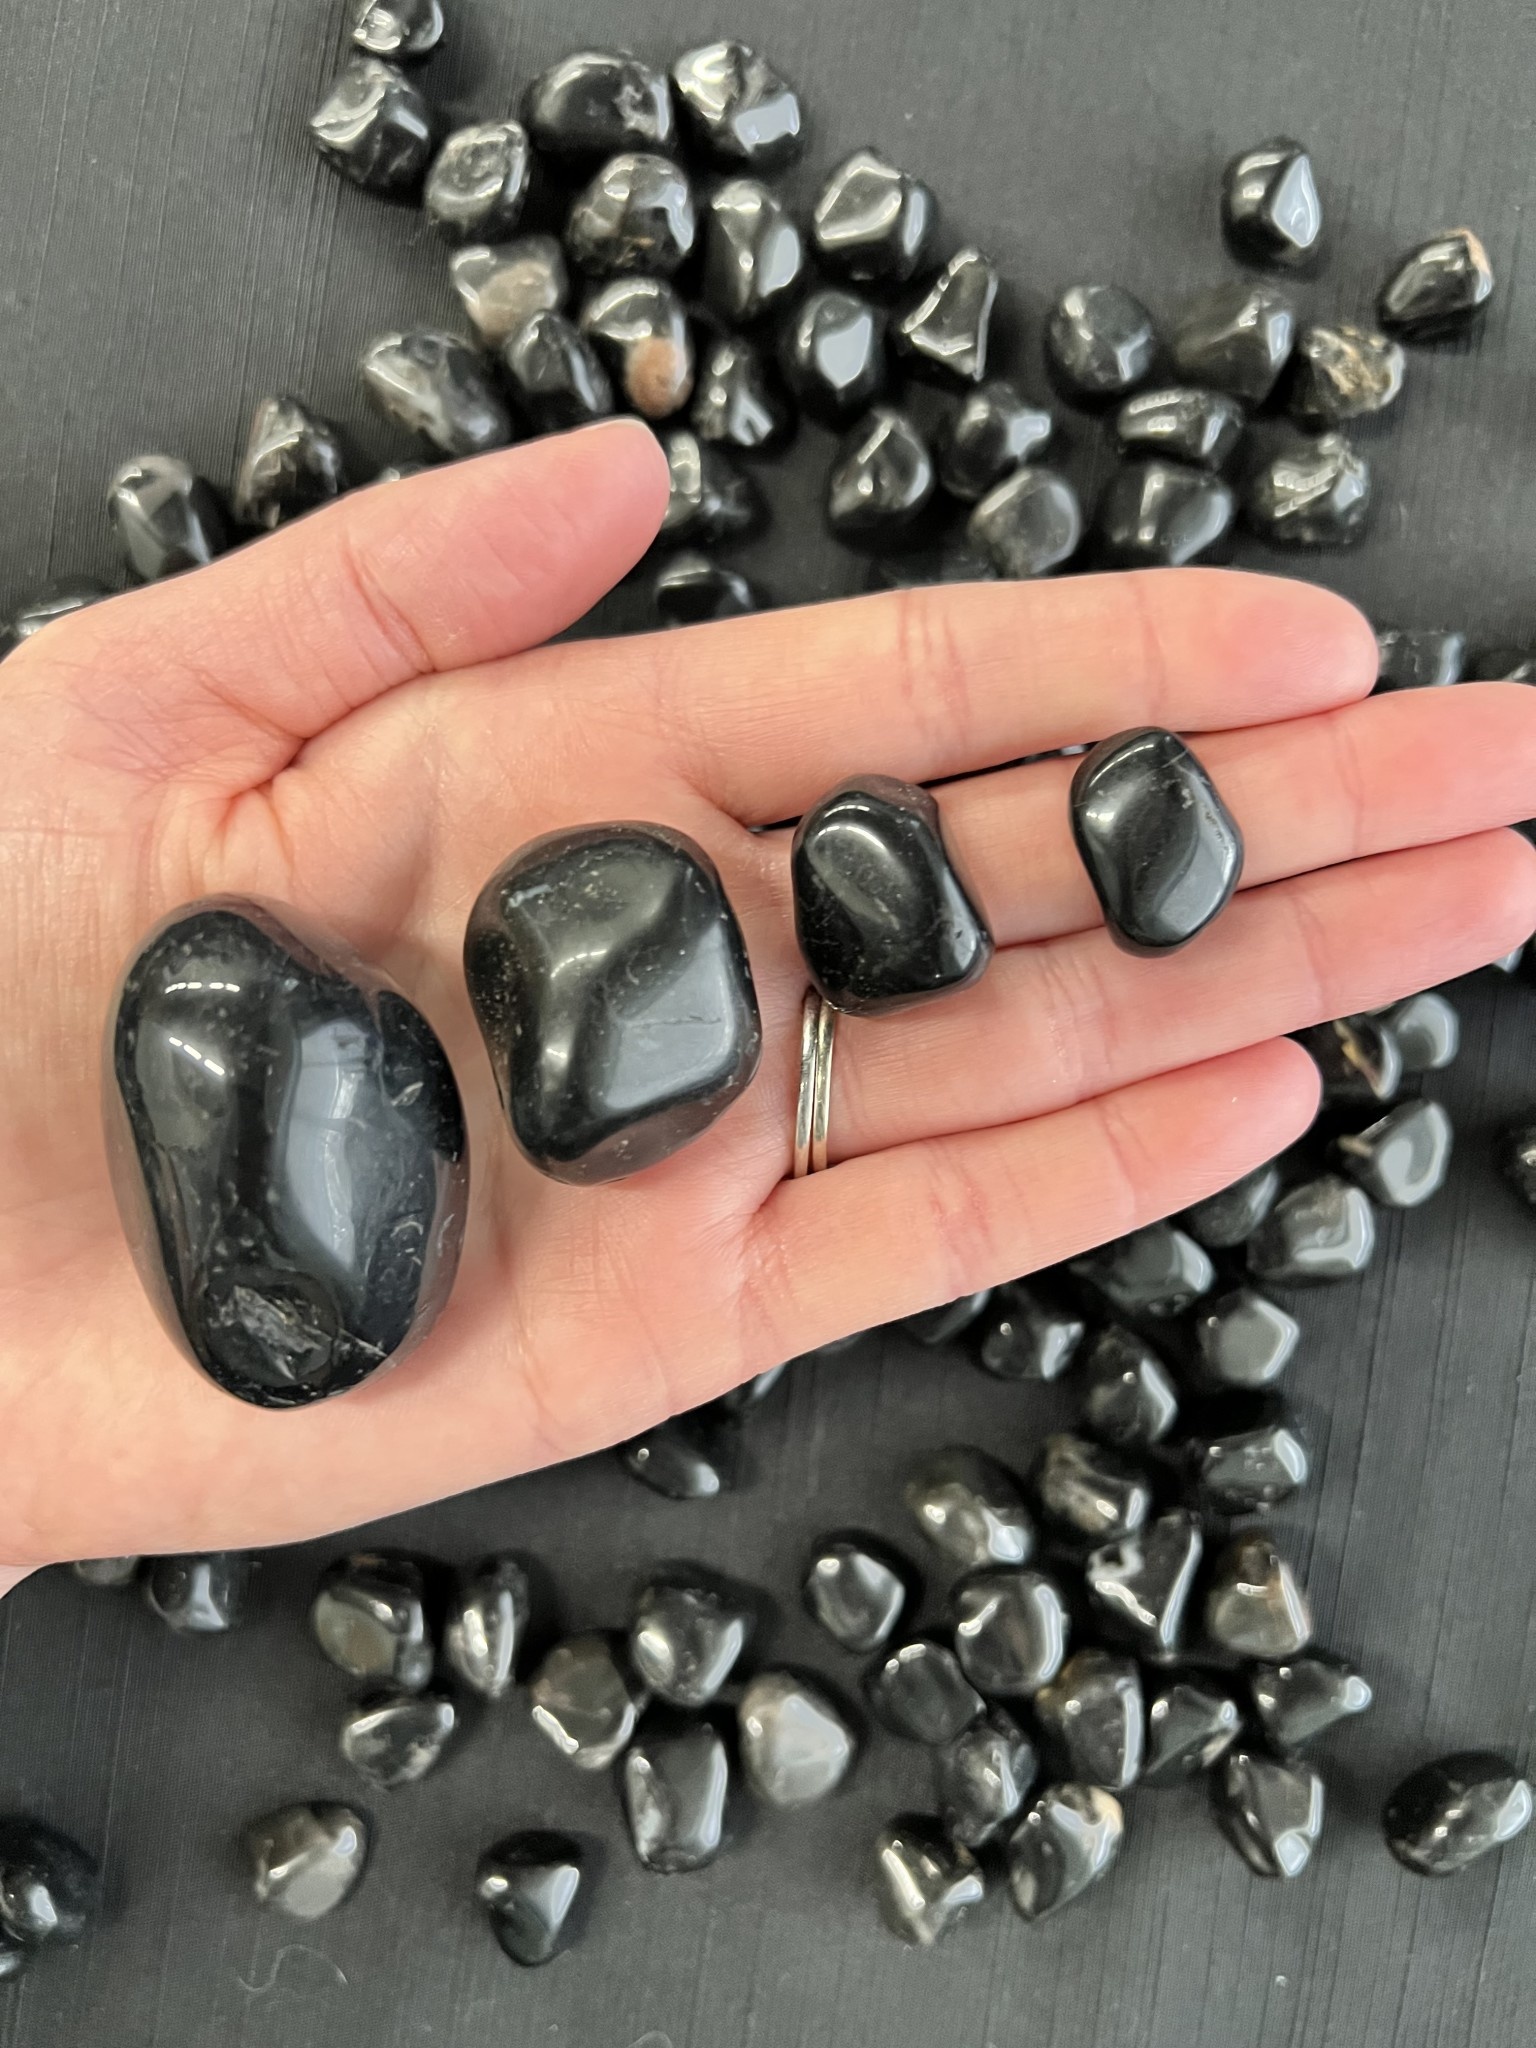 Grade A Black Onyx Tumbled Stone, 0.8 1 Inches Tumbled Black Onyx